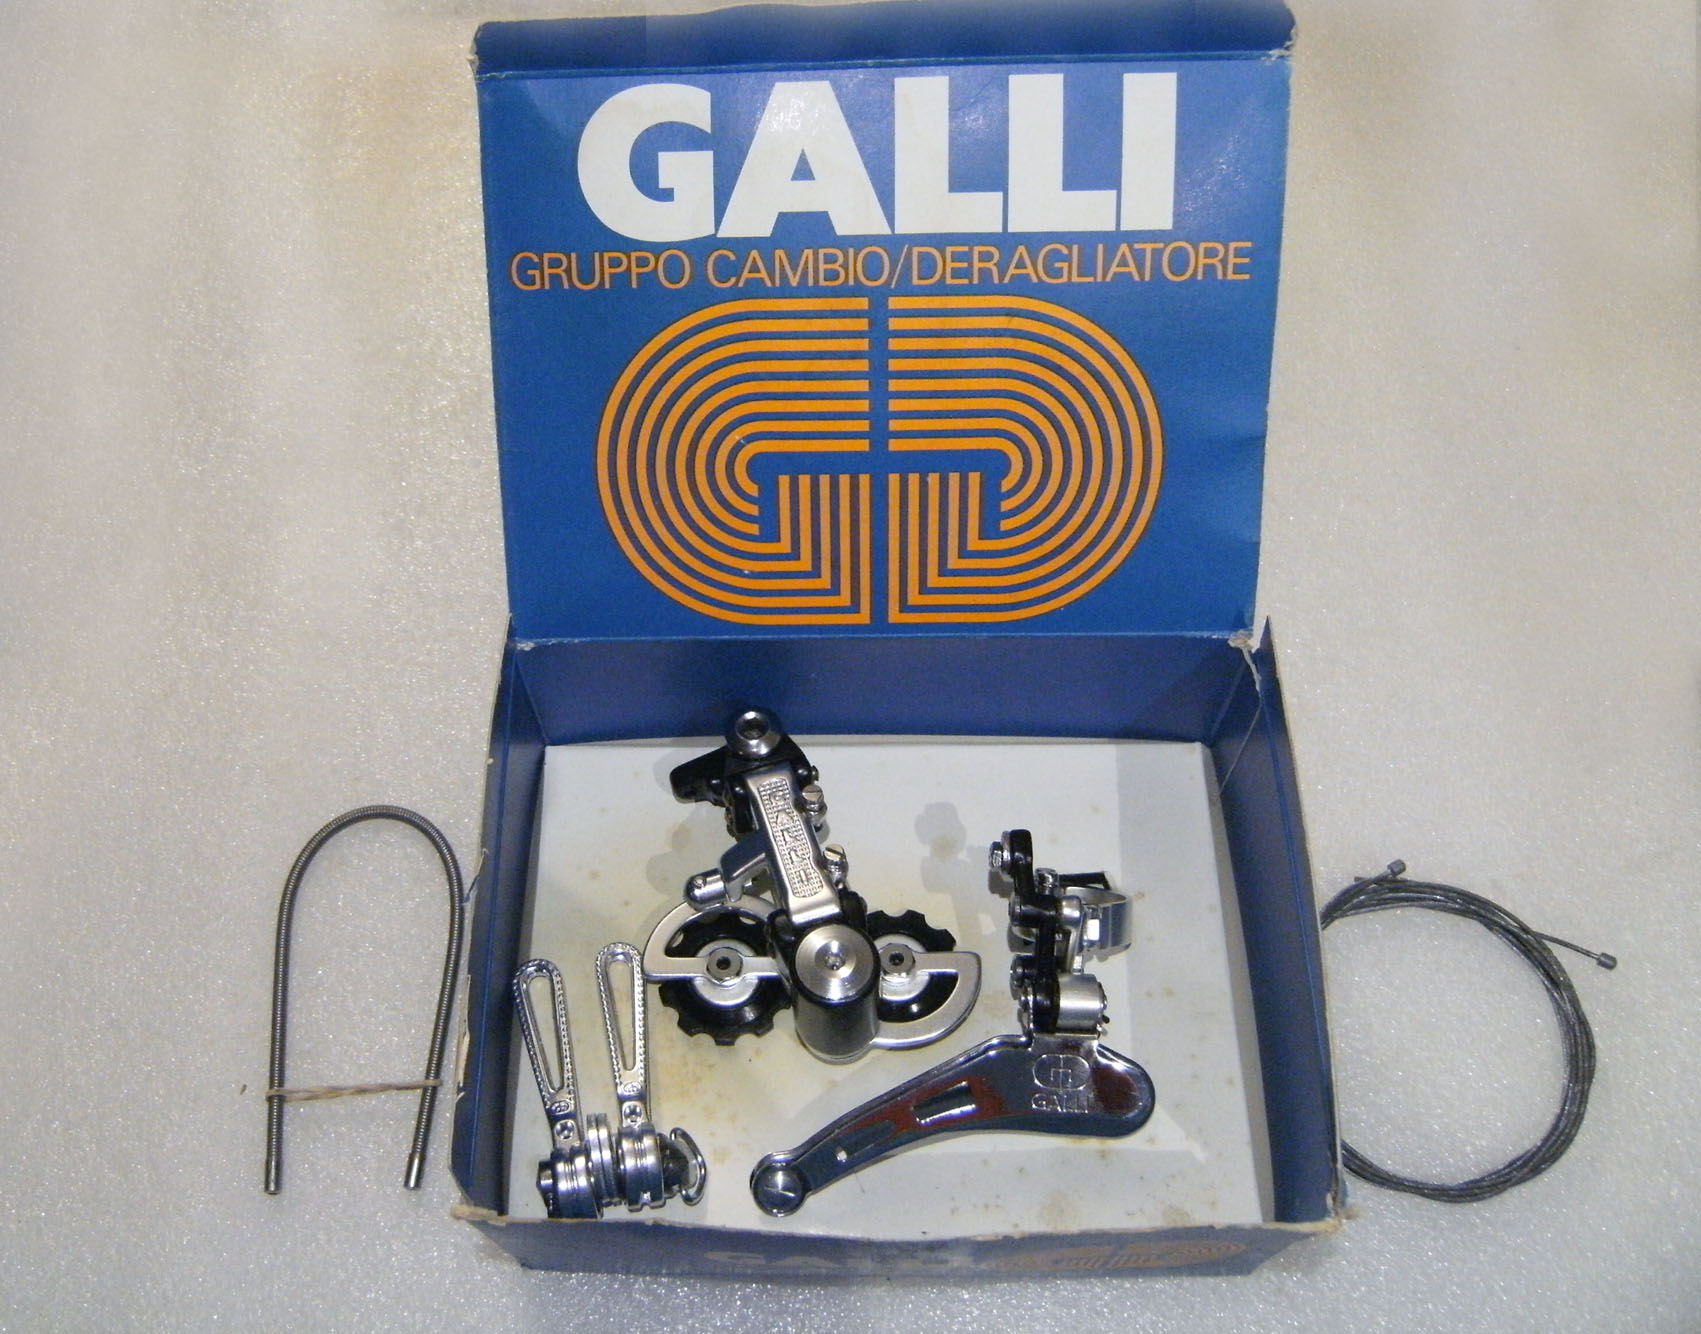 Galli Criterium gruppo cambio, SchaltSet, derailleur set (1).jpg